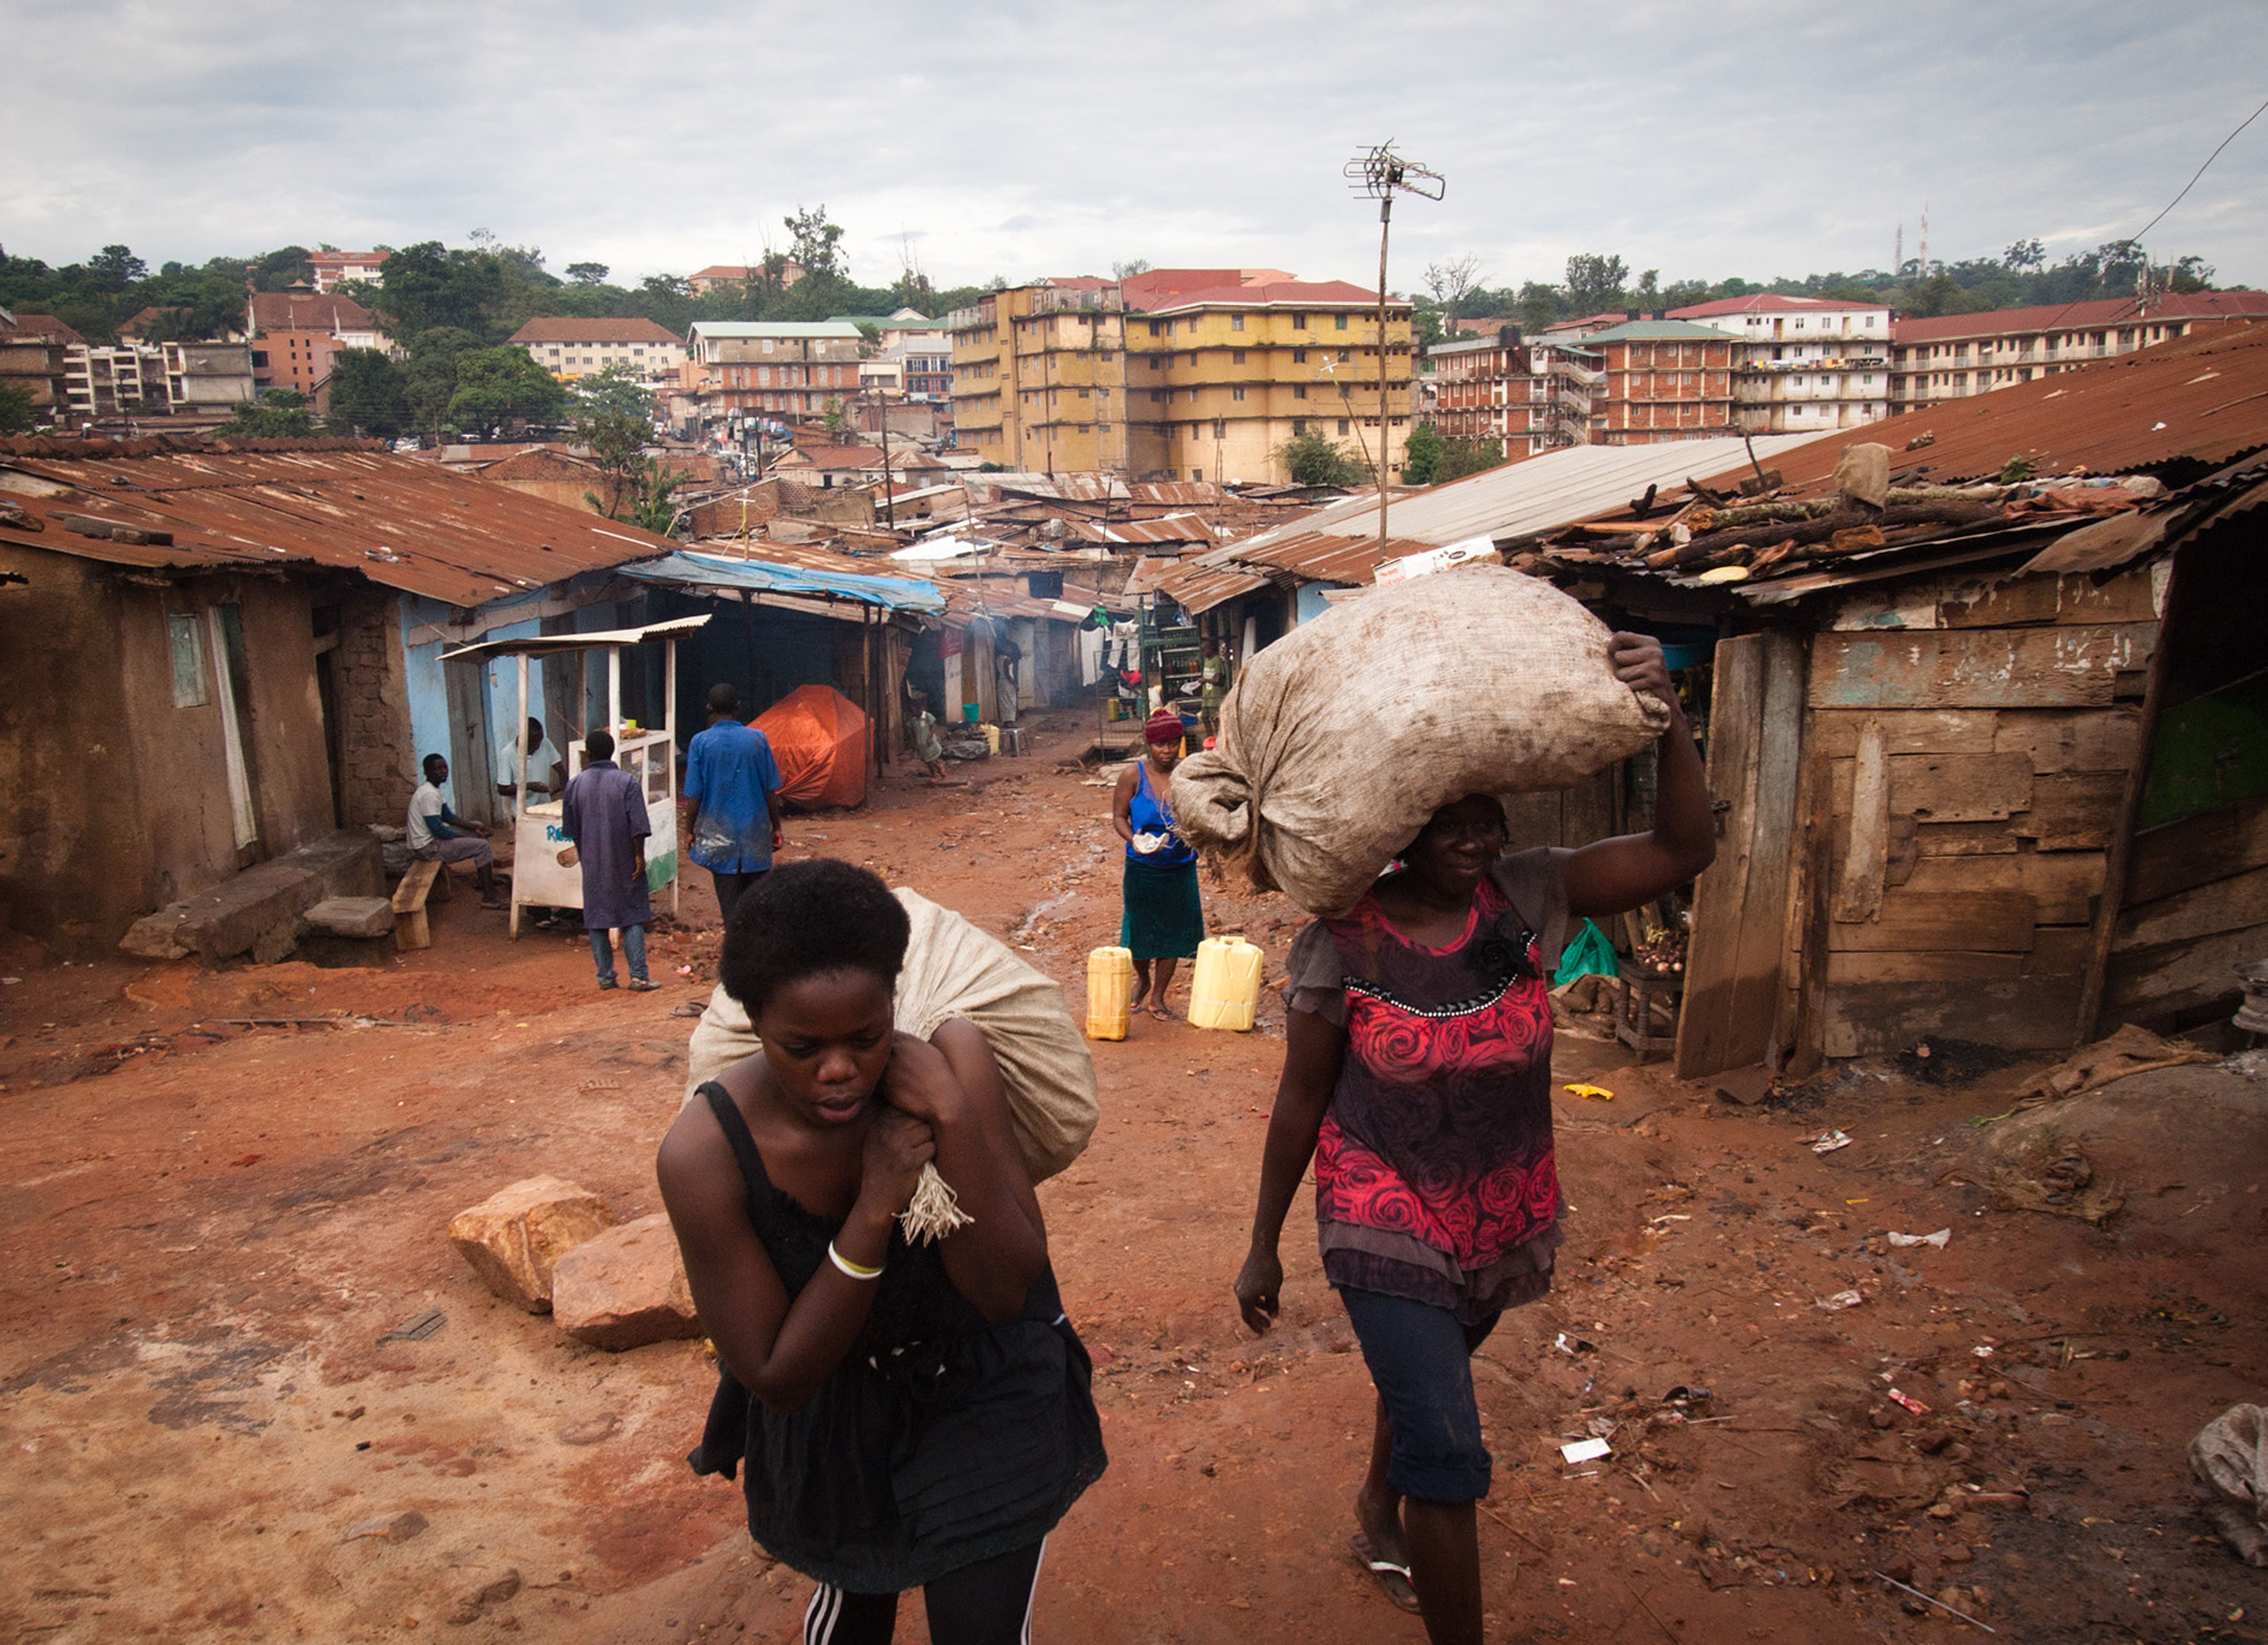 Vrouwen dragen zakken met bananenschillen in Oeganda.